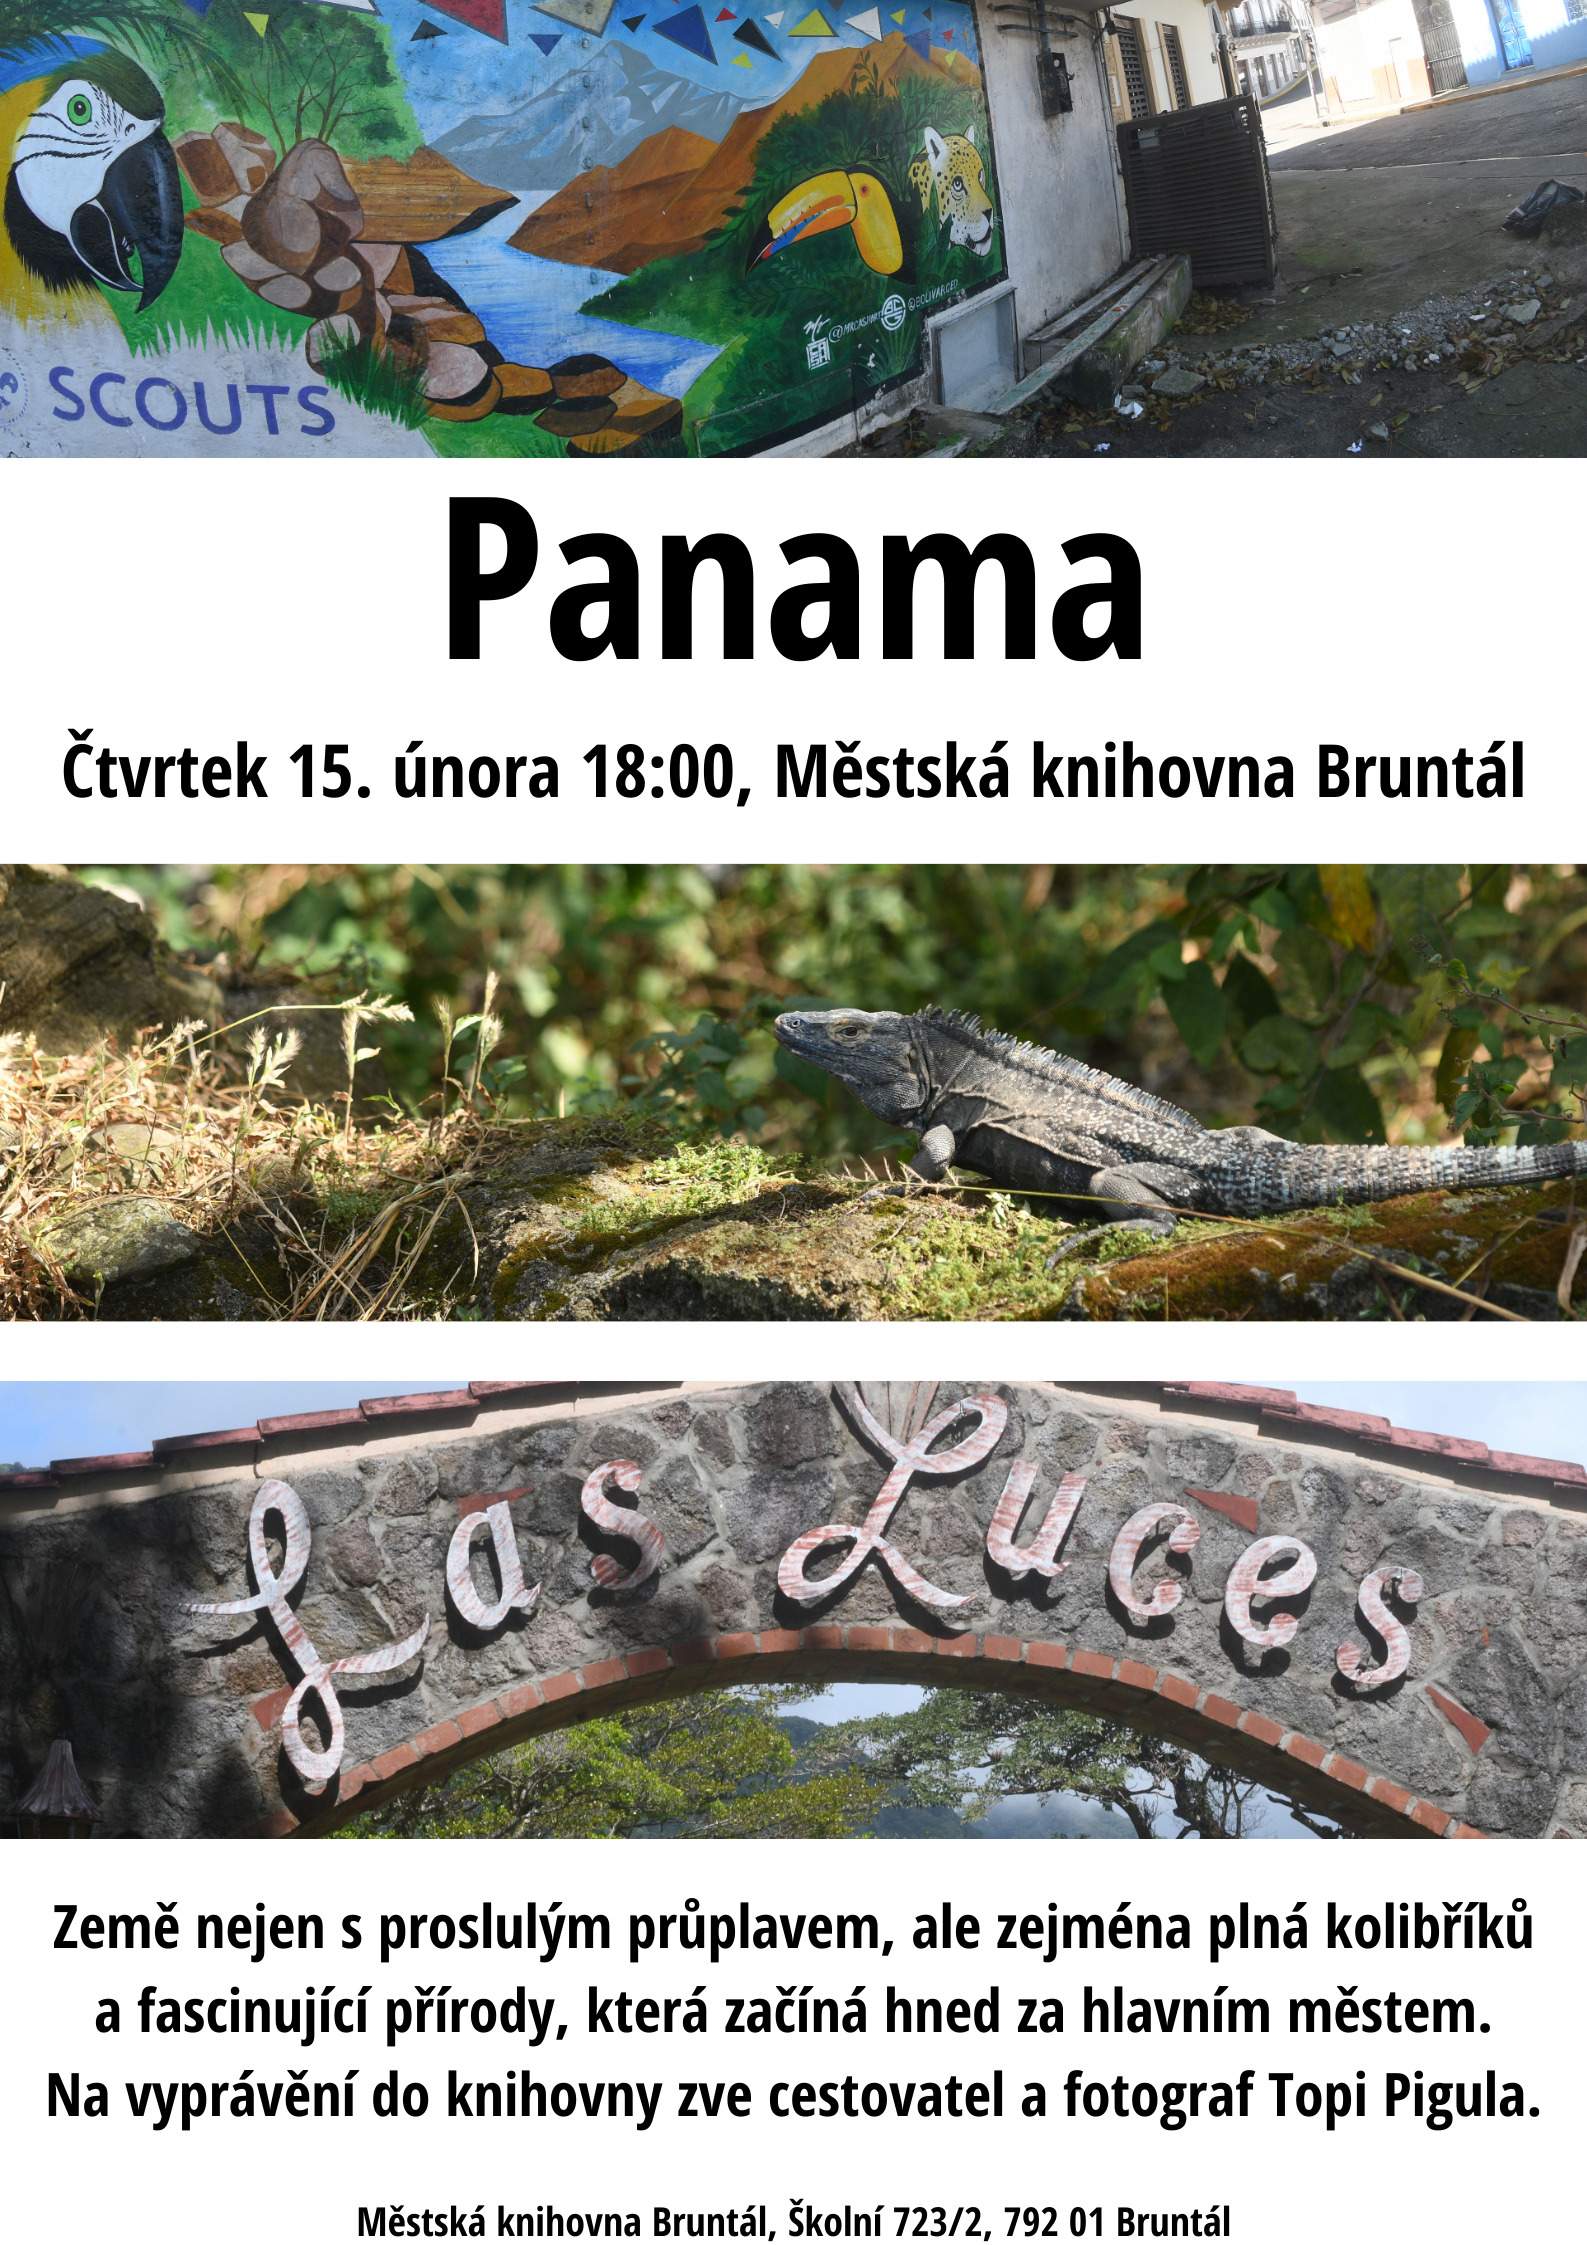 Již ve čtvrtek se vydáme do Panamy